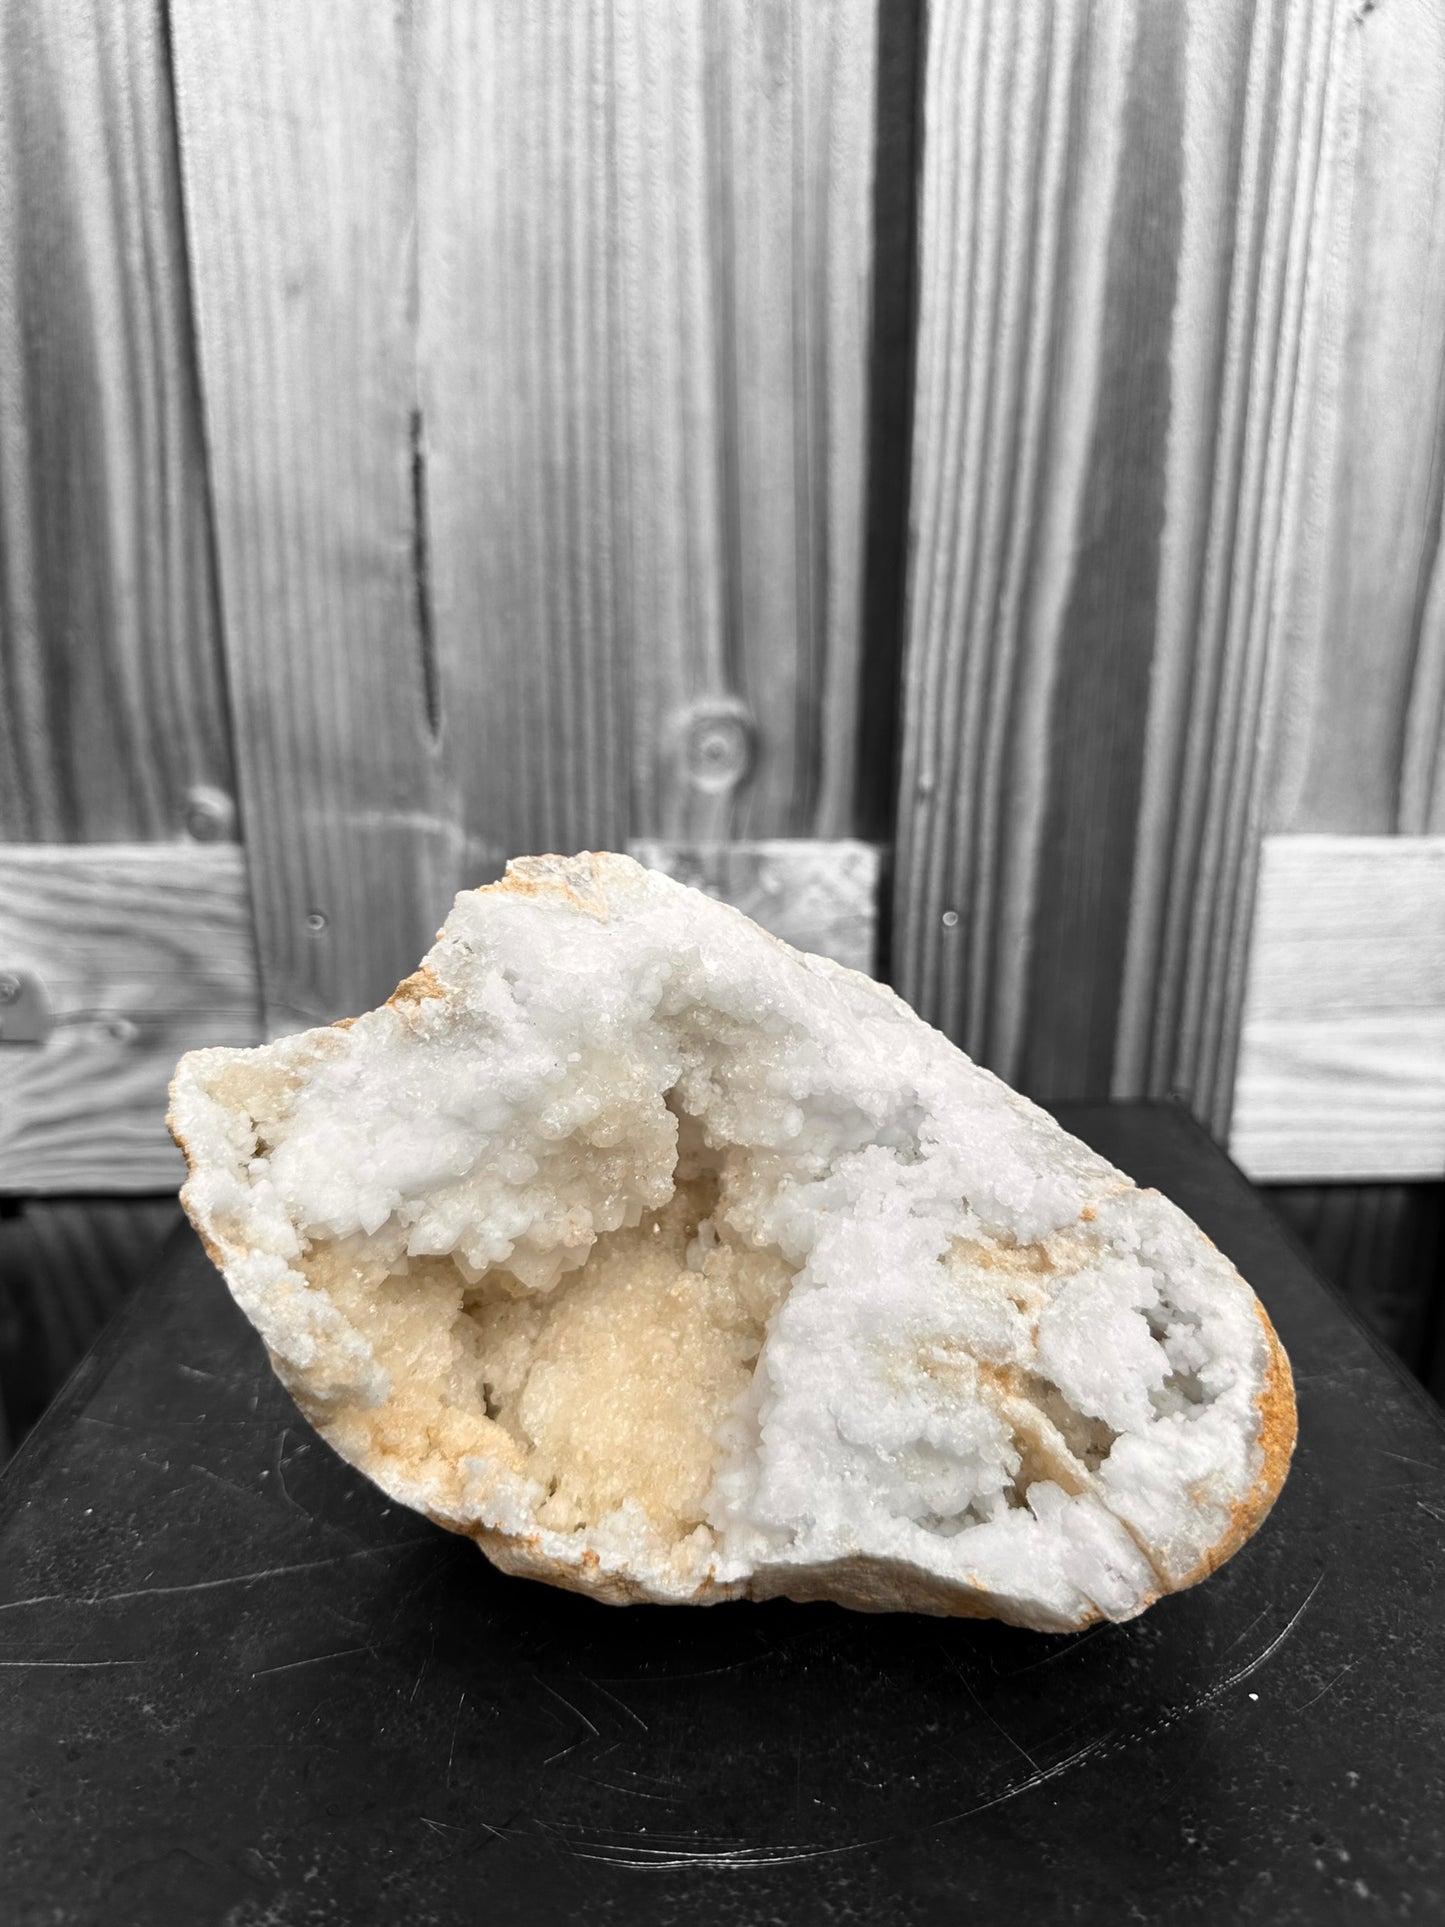 Bergkristal Geode